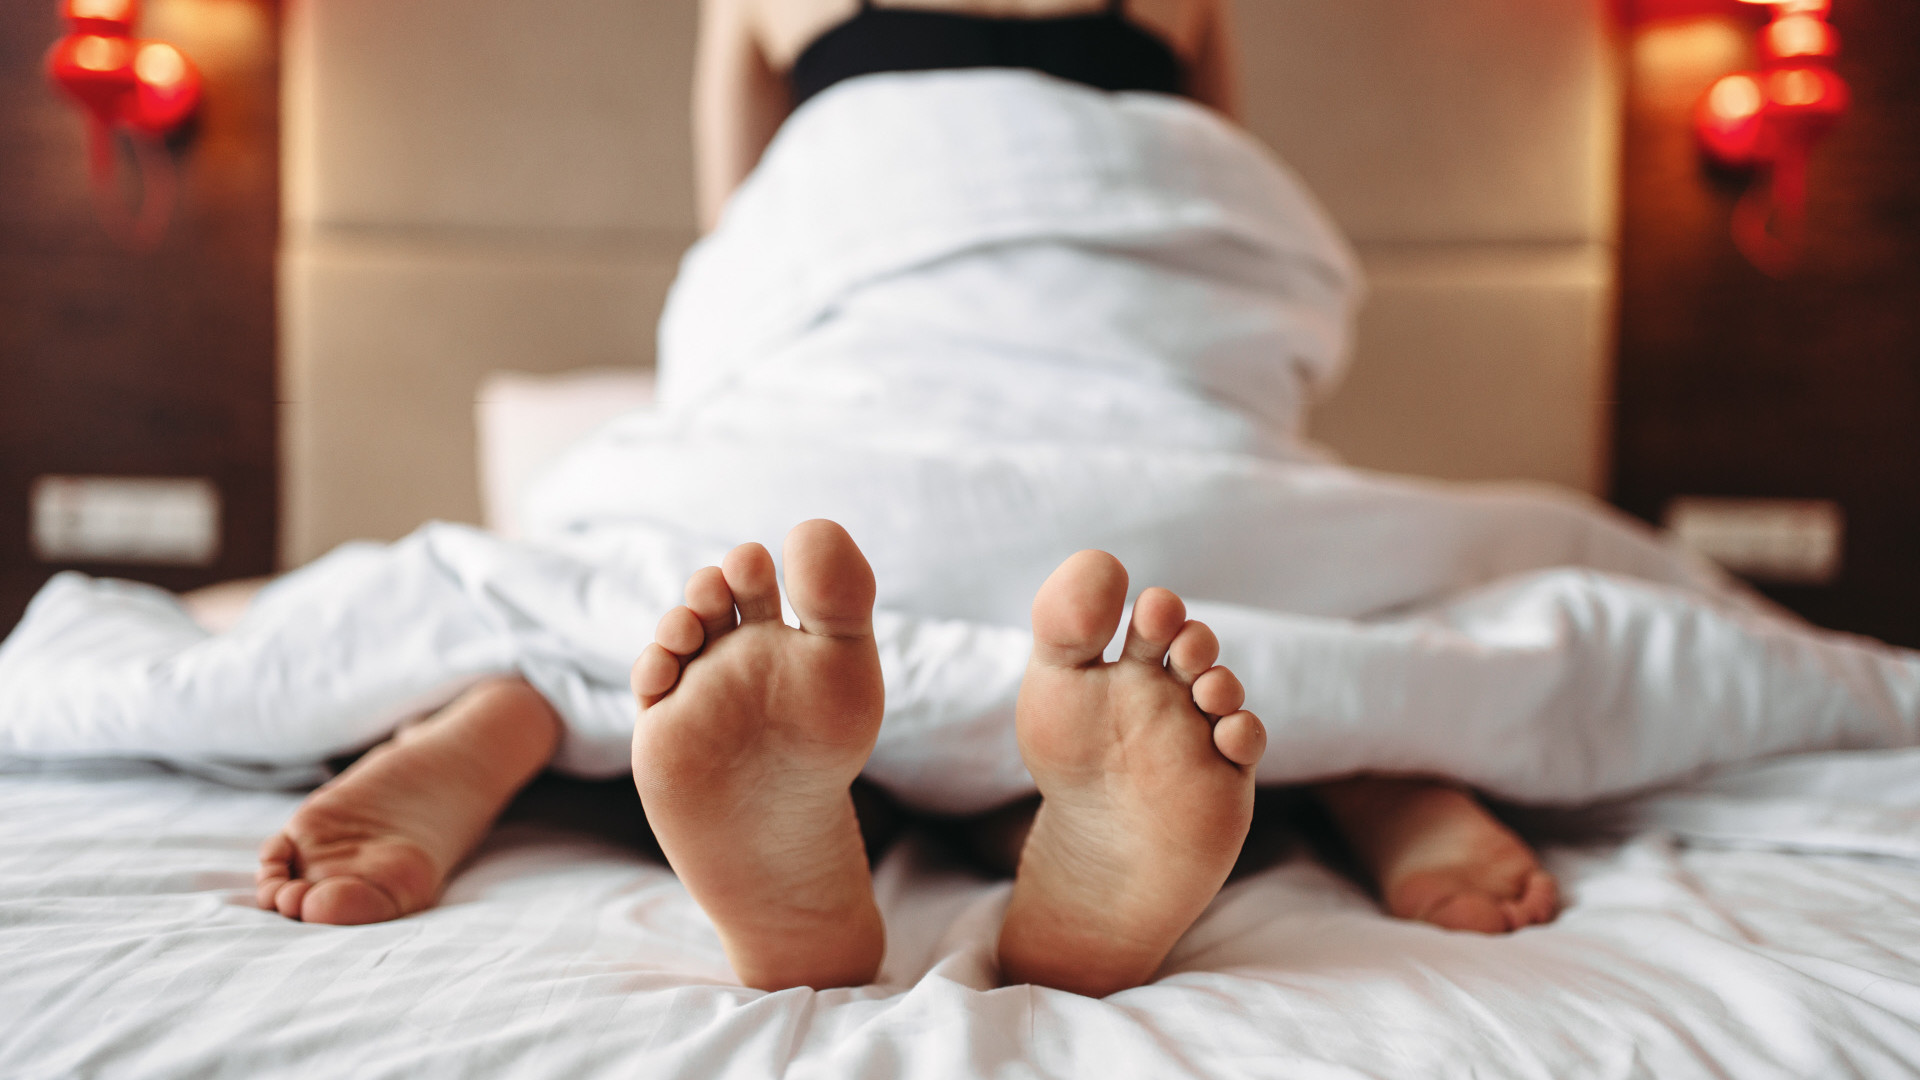 Sexo: Por las mujeres de 50 disfrutan más en la cama, - Vozpópuli